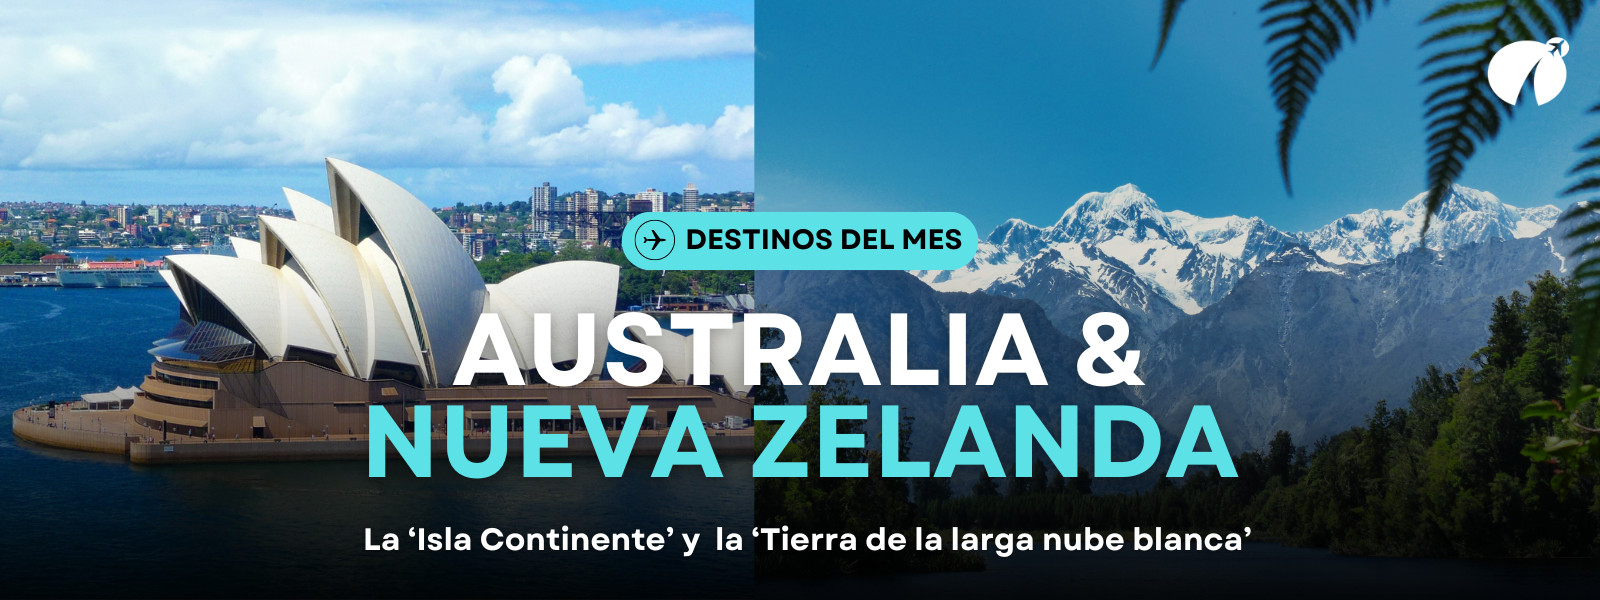 Australia & Nueva Zelanda